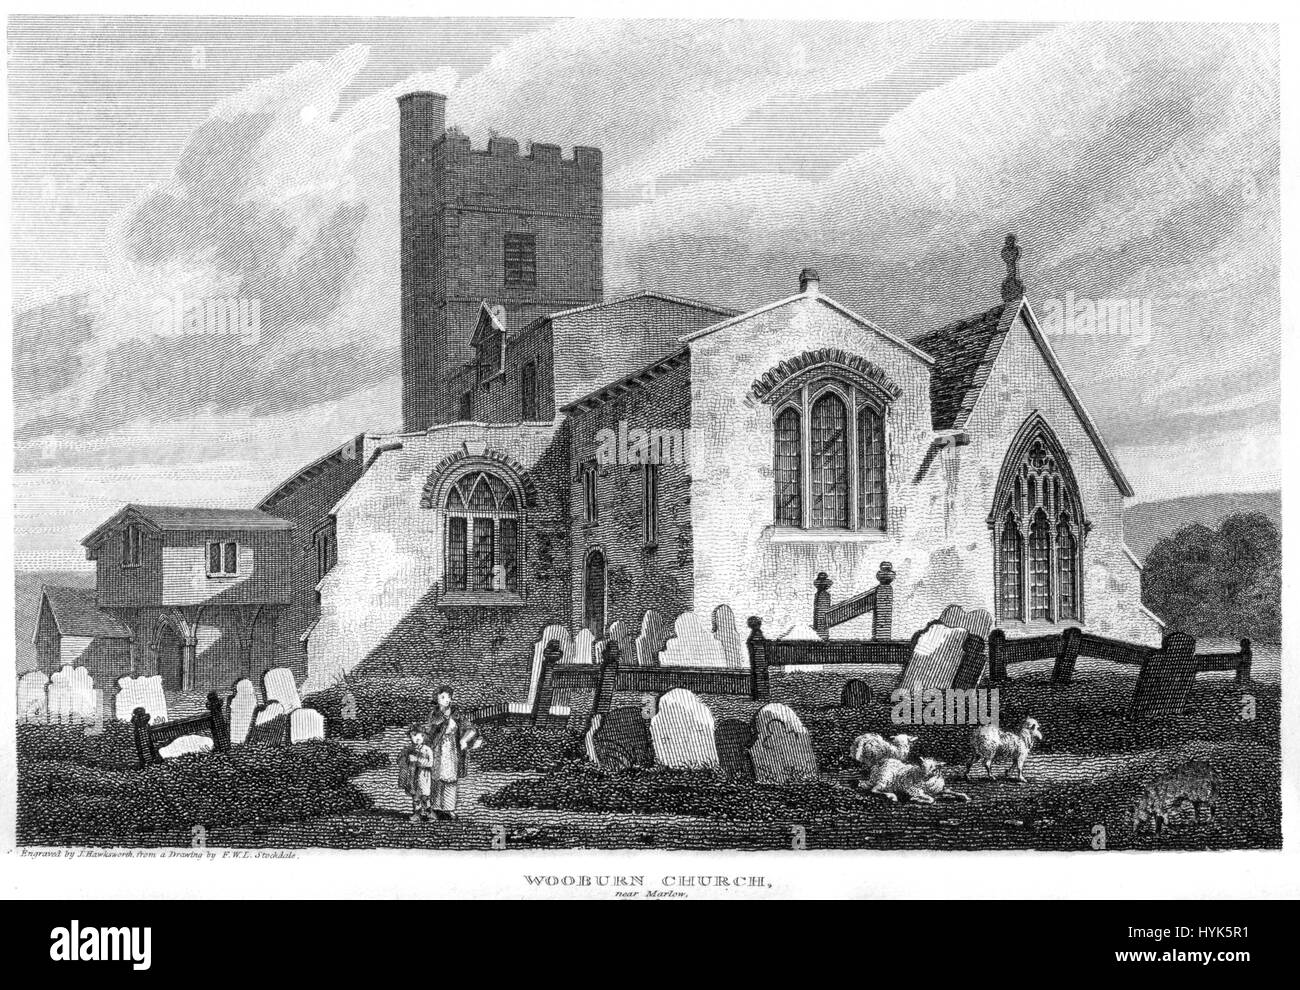 Eine Gravur der Wooburn Kirche in der Nähe von Marlow mit hoher Auflösung aus einem Buch gescannt gedruckt im Jahre 1812.  Kostenlos copyright geglaubt. Stockfoto